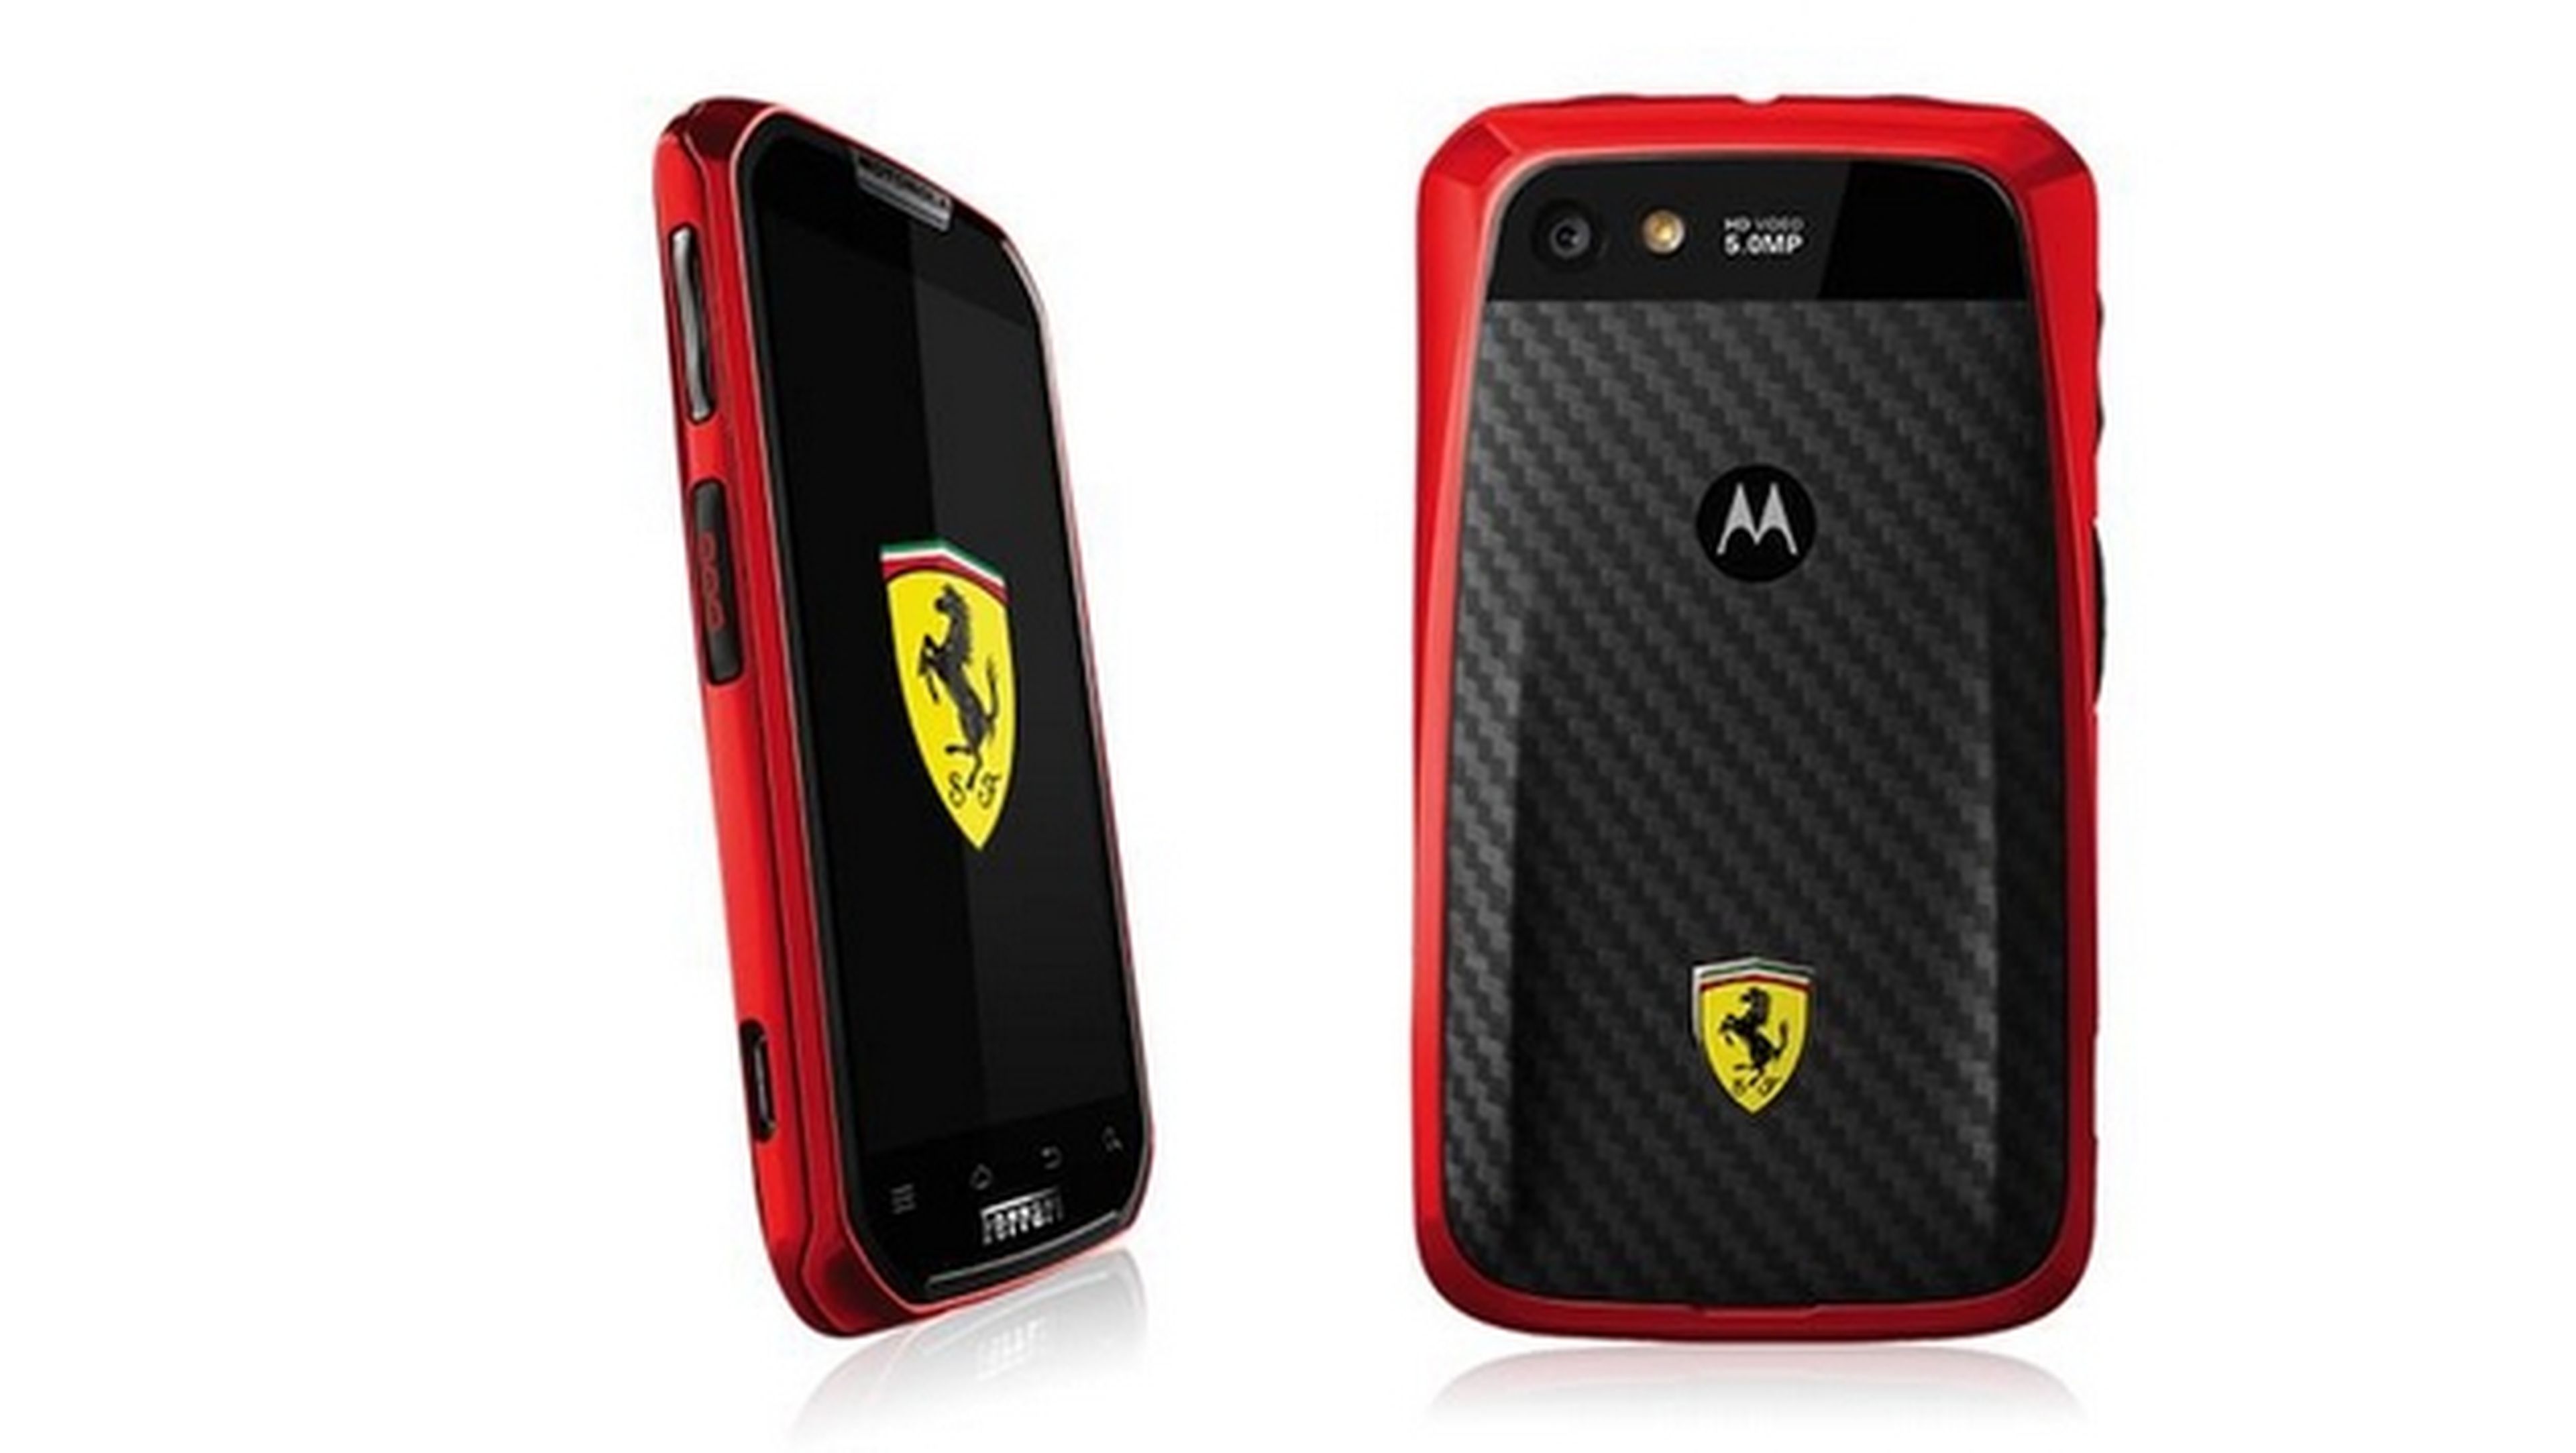 Motorola podría lanzar el Moto G 4G LTE, así como una edición Ferrari, y un Moto G de bajo coste llamado Moto E